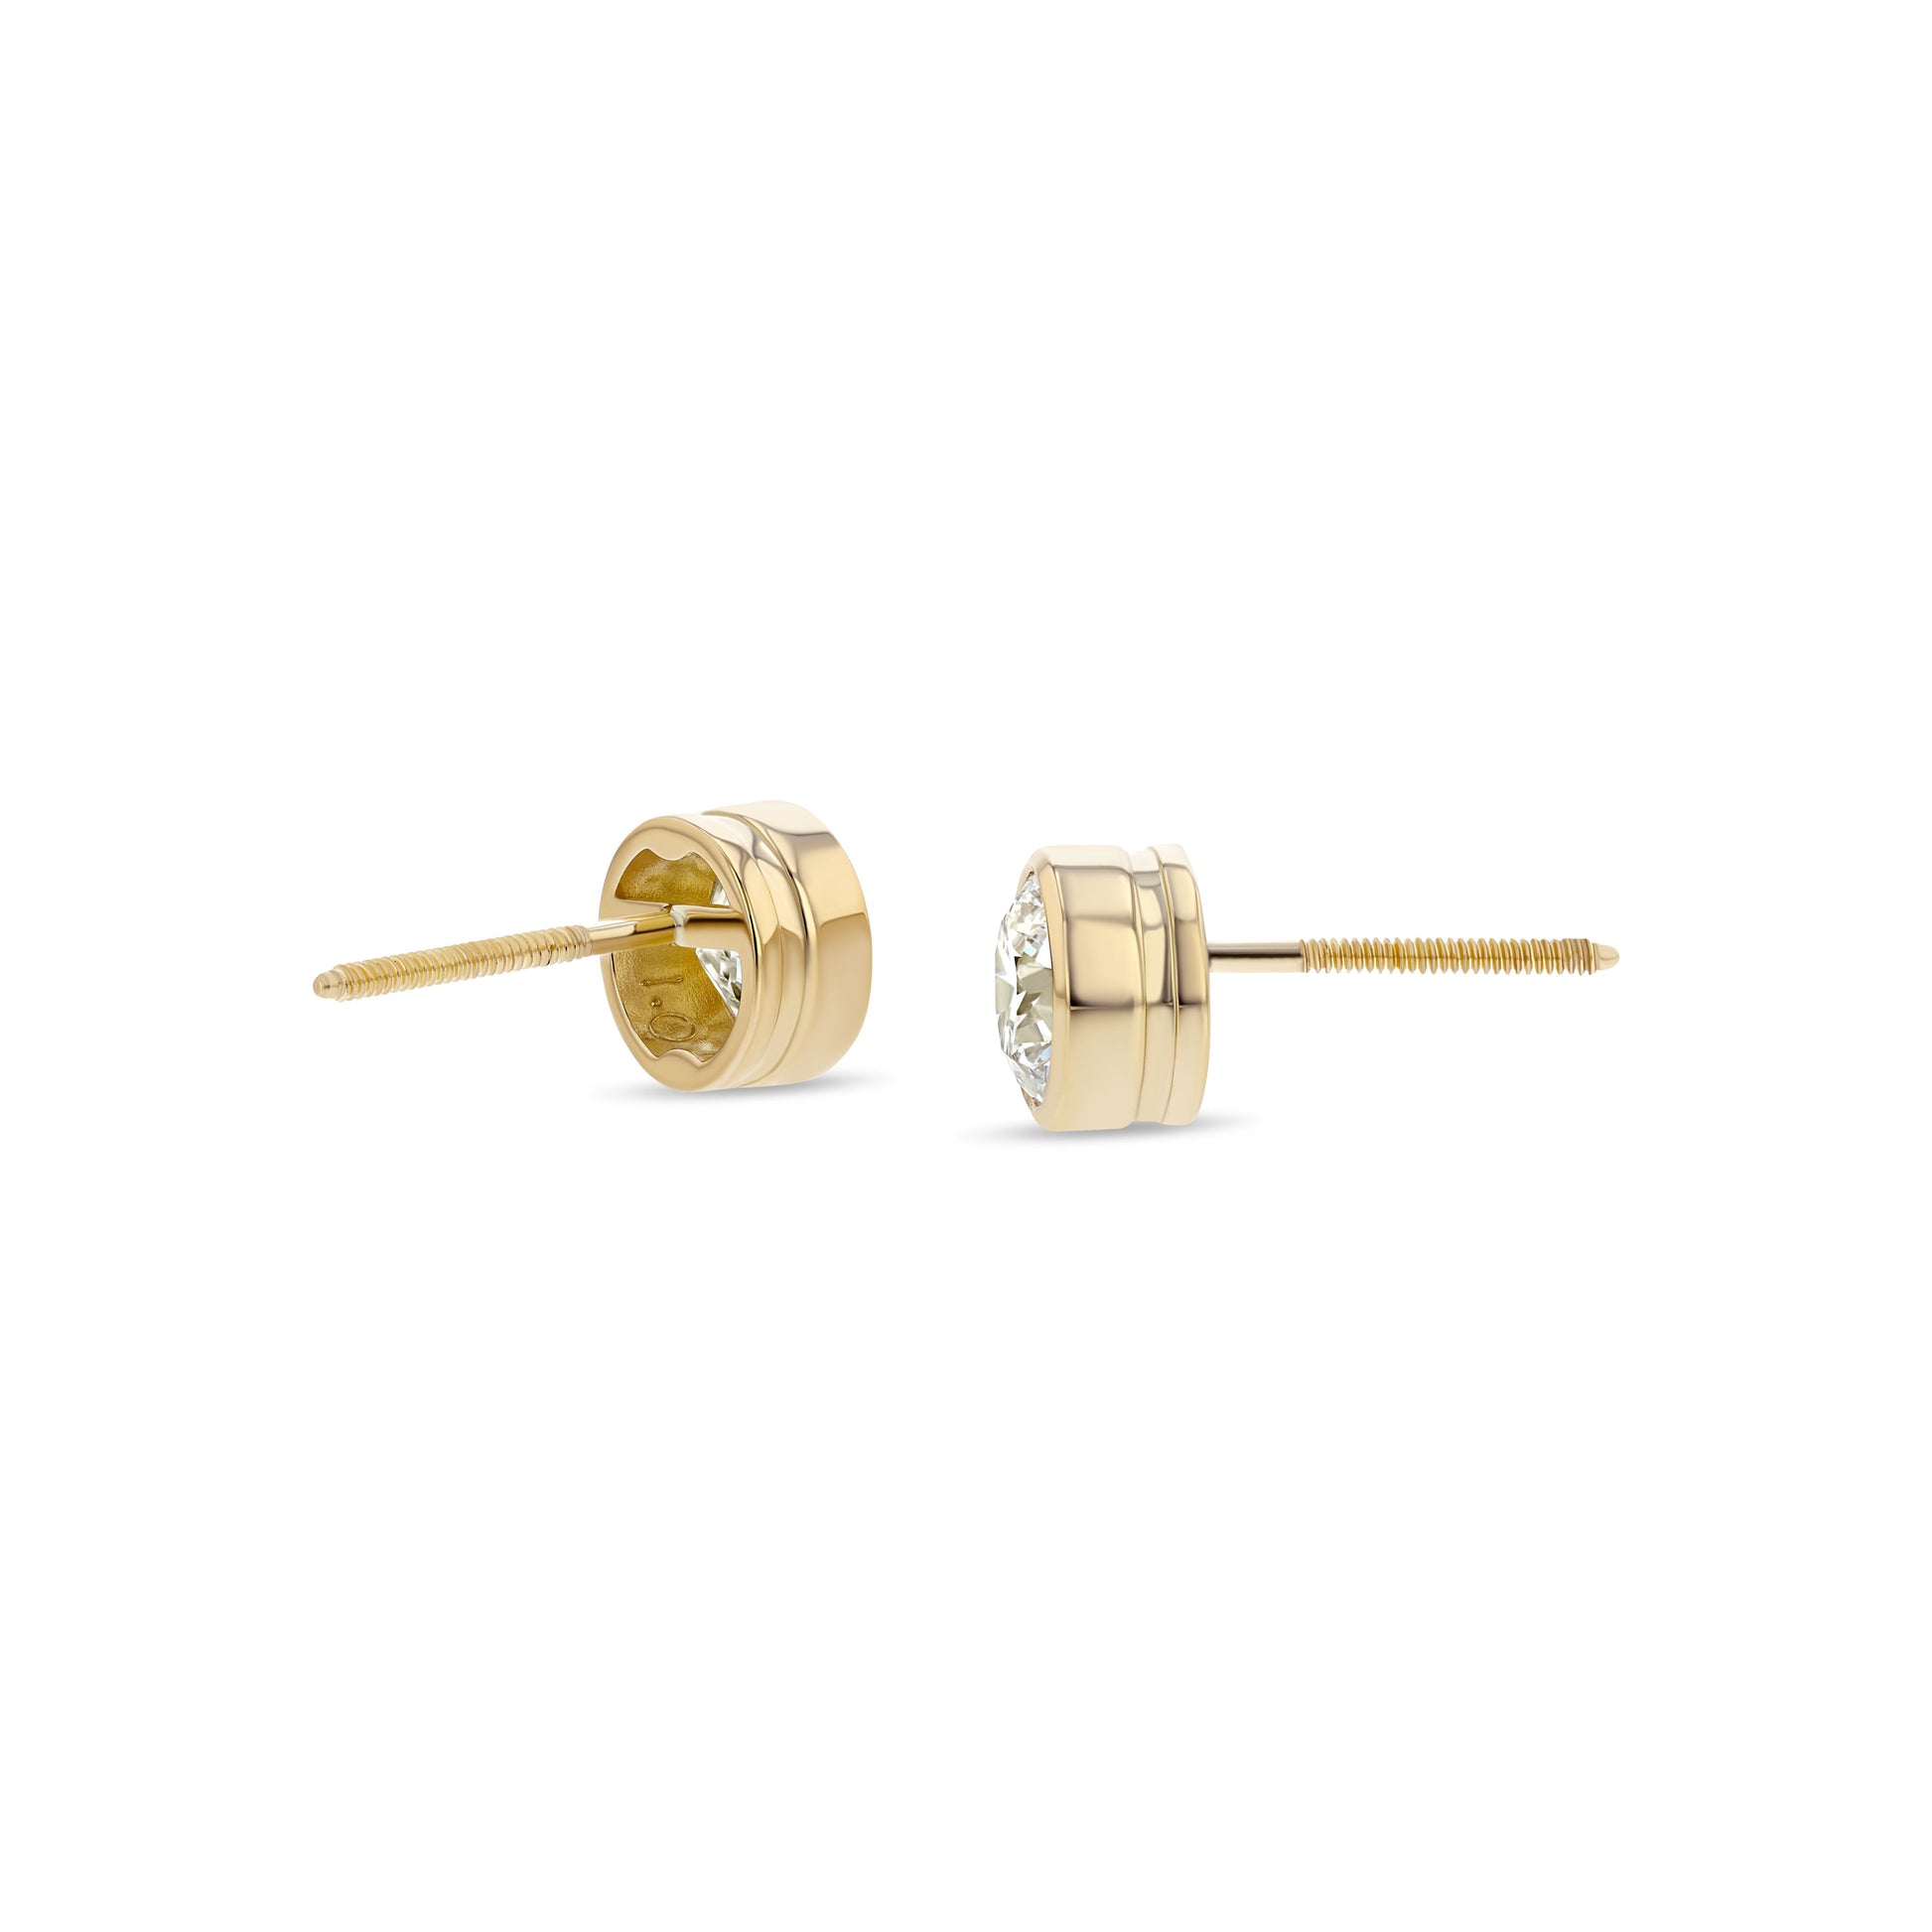 Bezel-Set Round Diamond Stud Earrings in 18K Yellow Gold